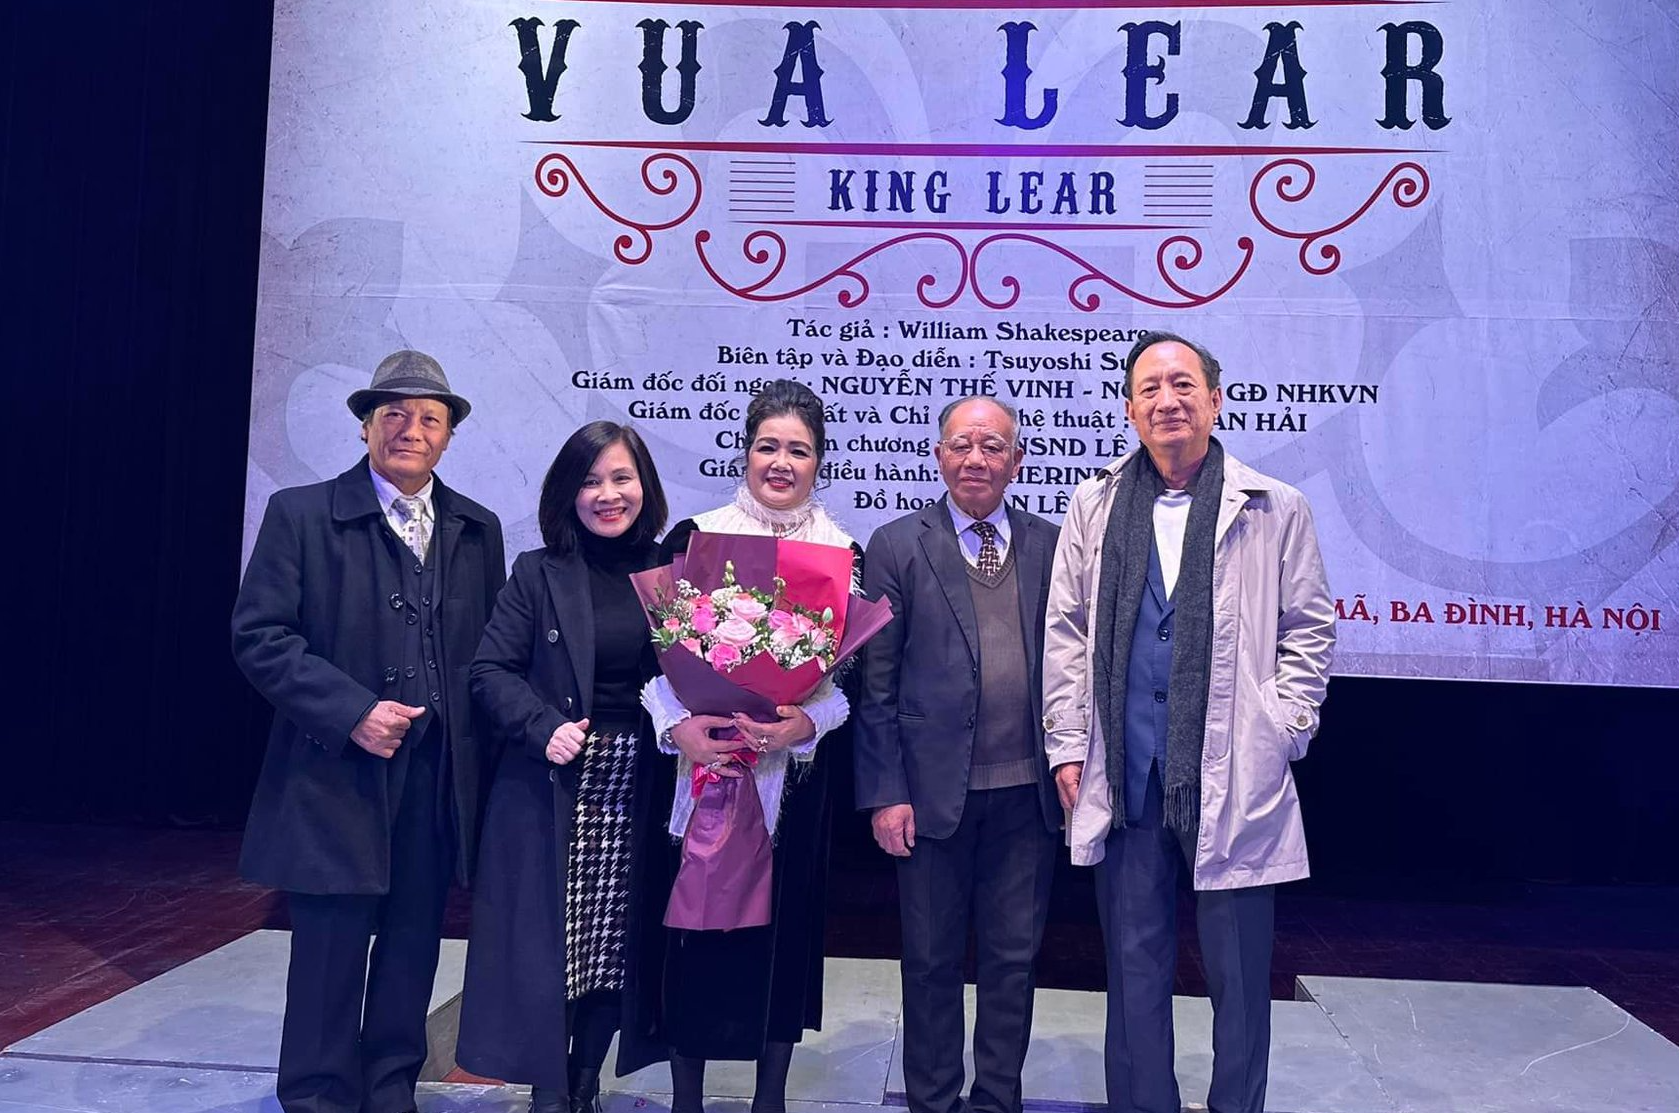 Đạo diễn người Nhật dựng “Vua Lear” của Shakespeare để thức tỉnh lương tri người Việt - Ảnh 3.